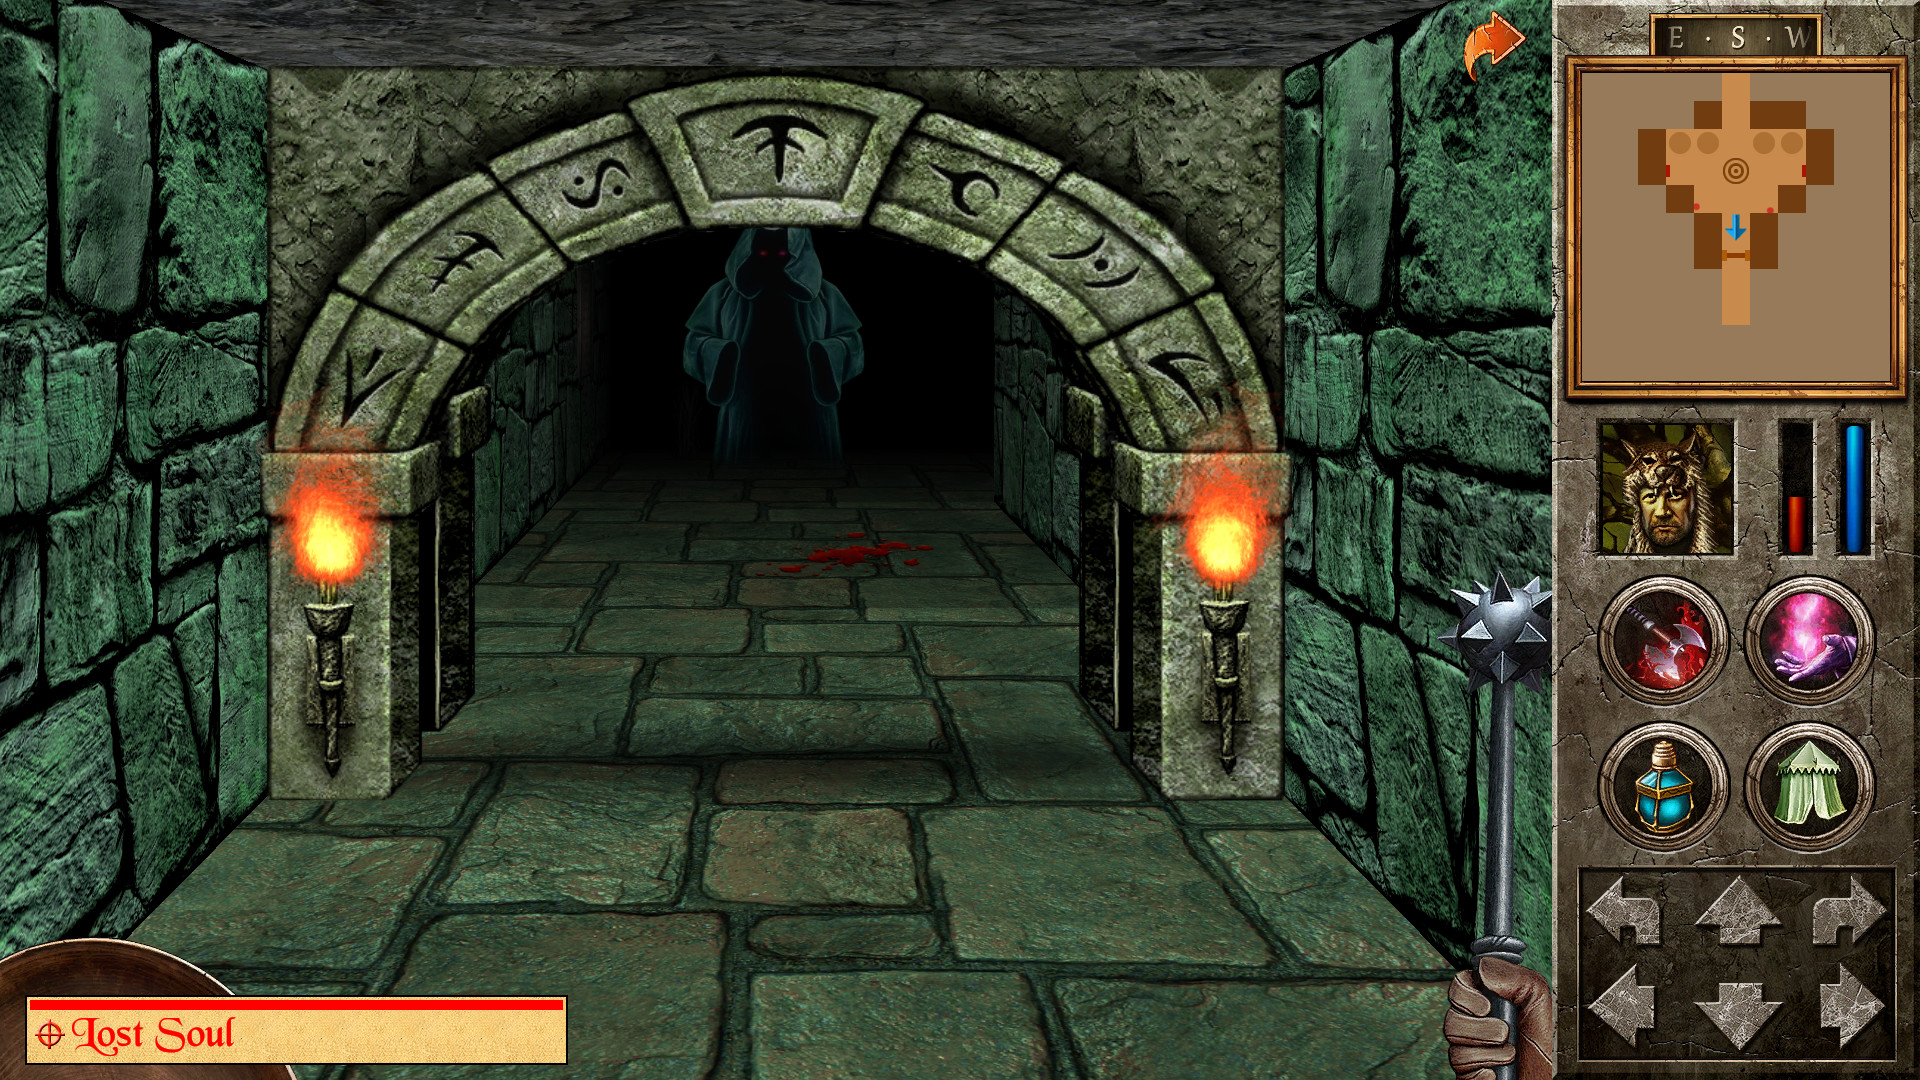 Начать игру иди. Quest игра 2000. The Quest игра Redshift. Игра бродилка в подземелье. Бродилка по замку.